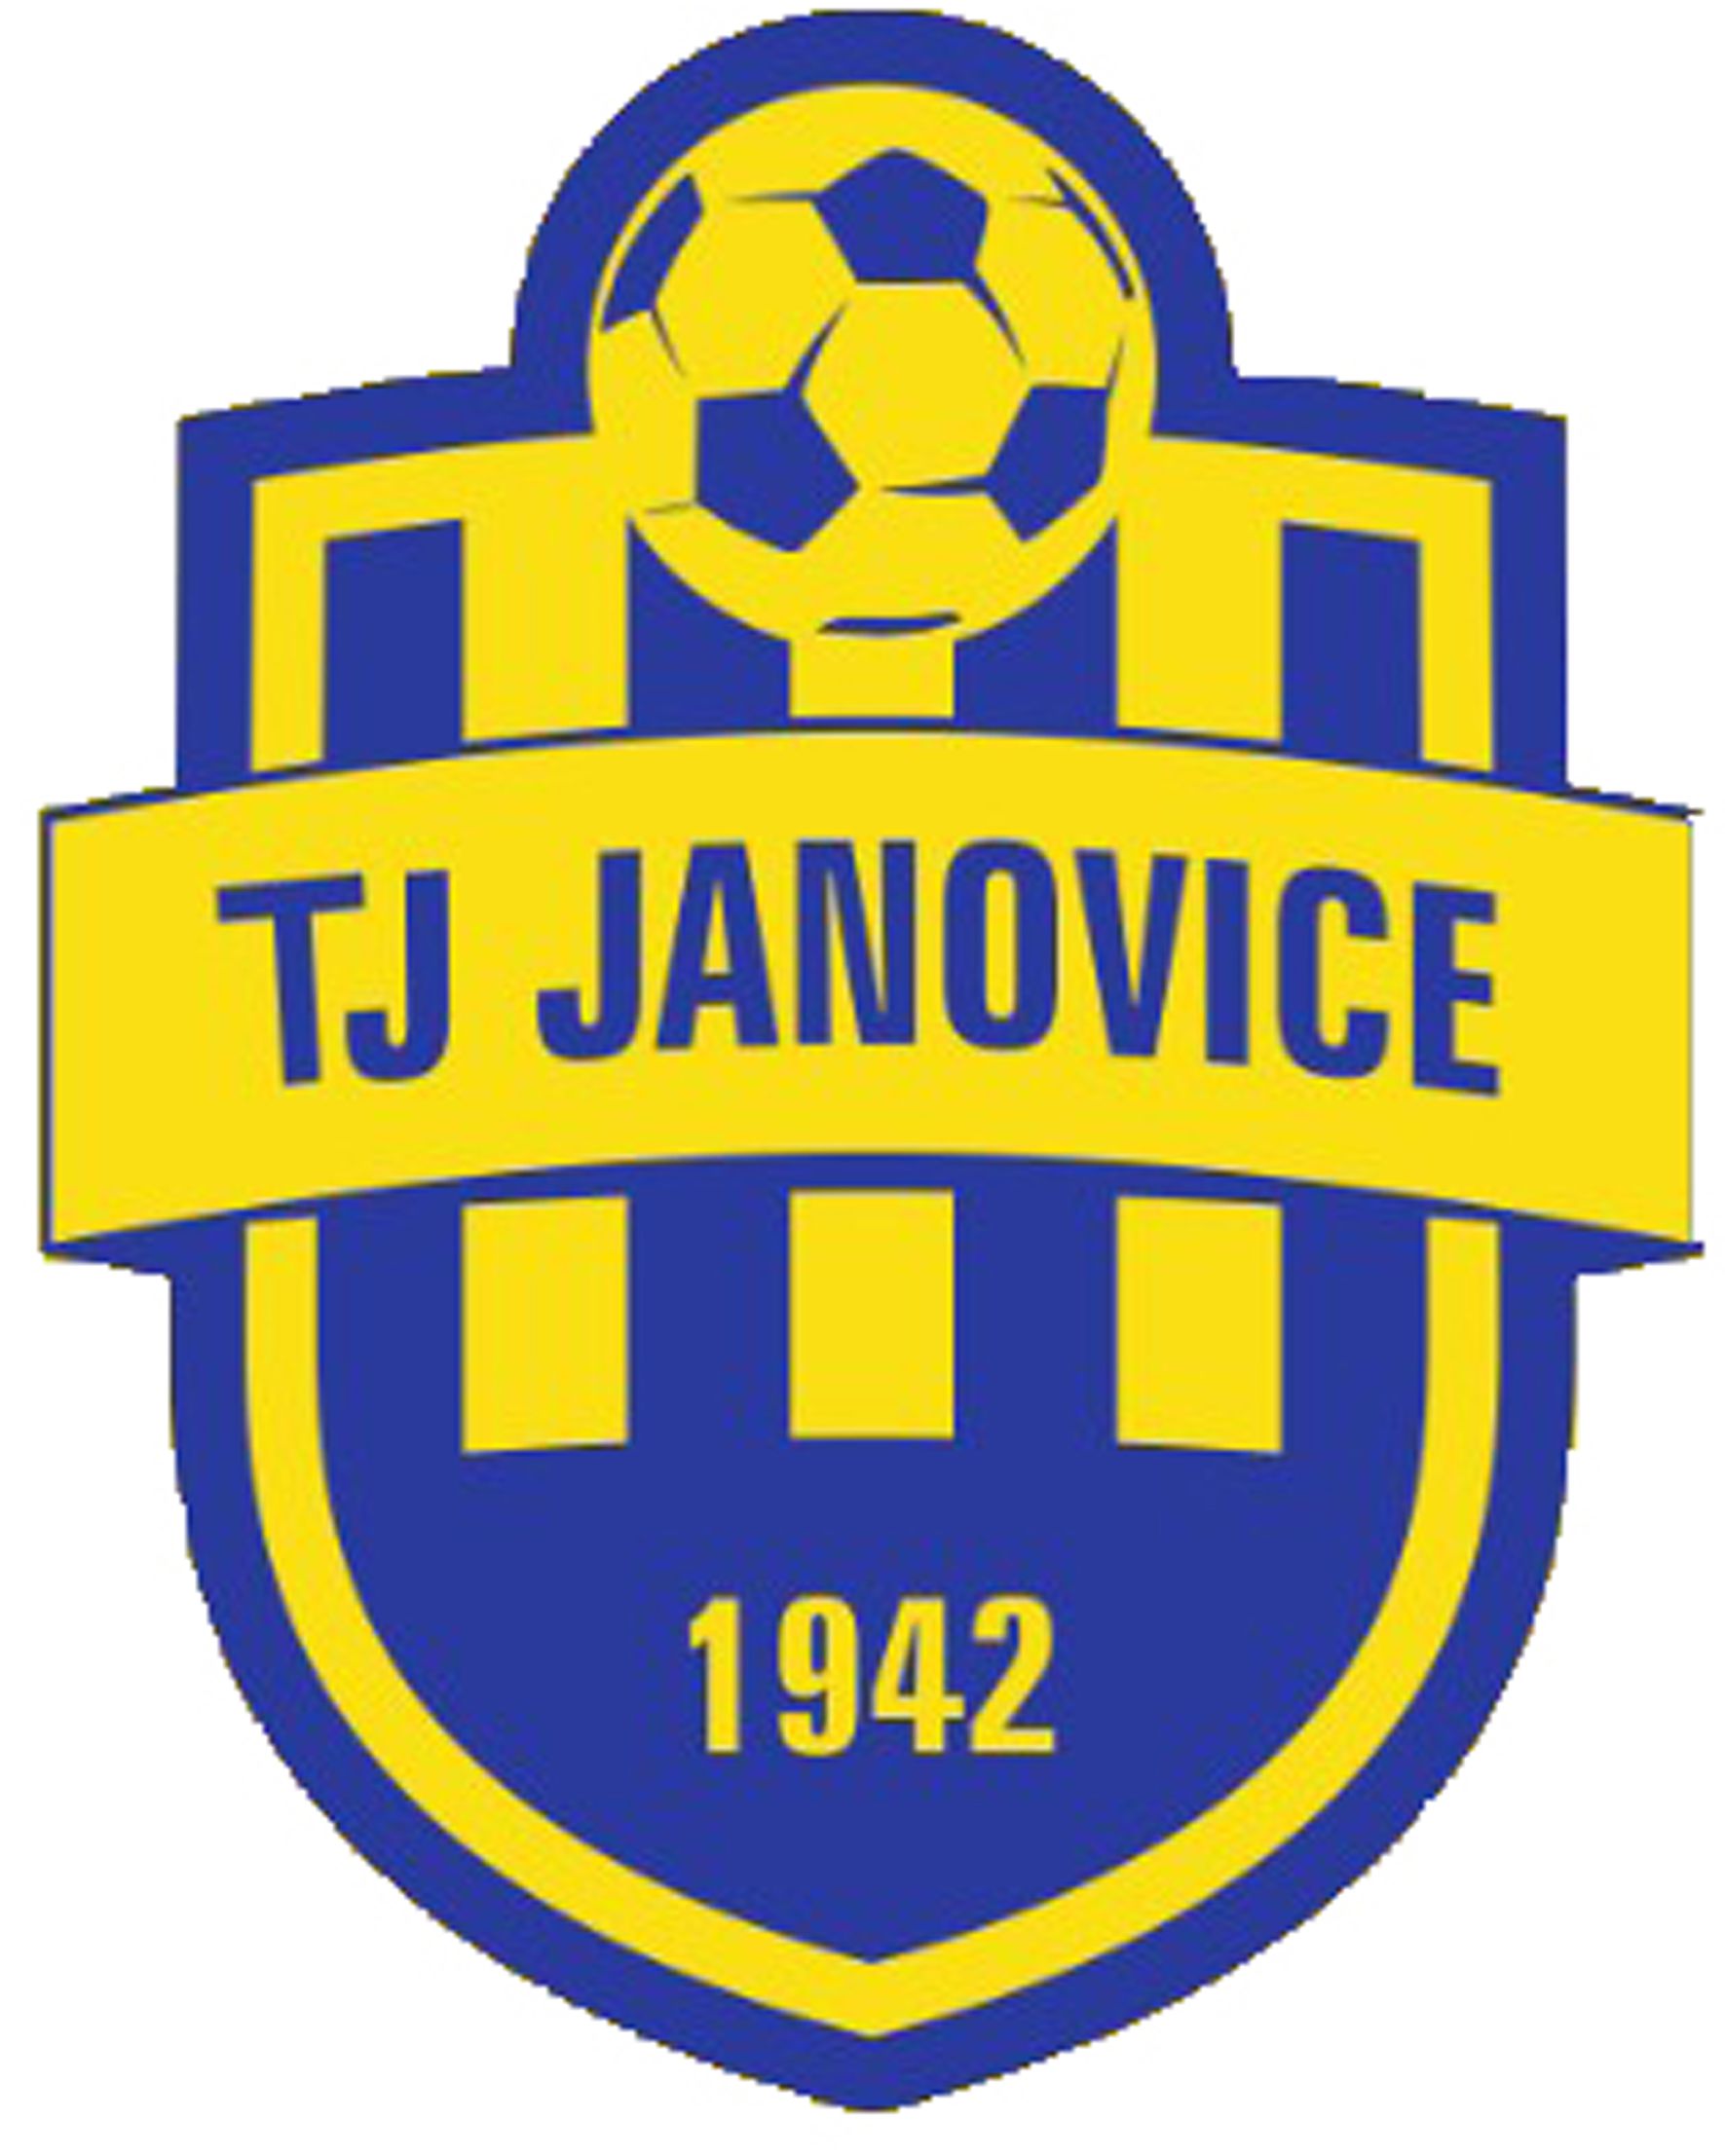 TJ Janovice